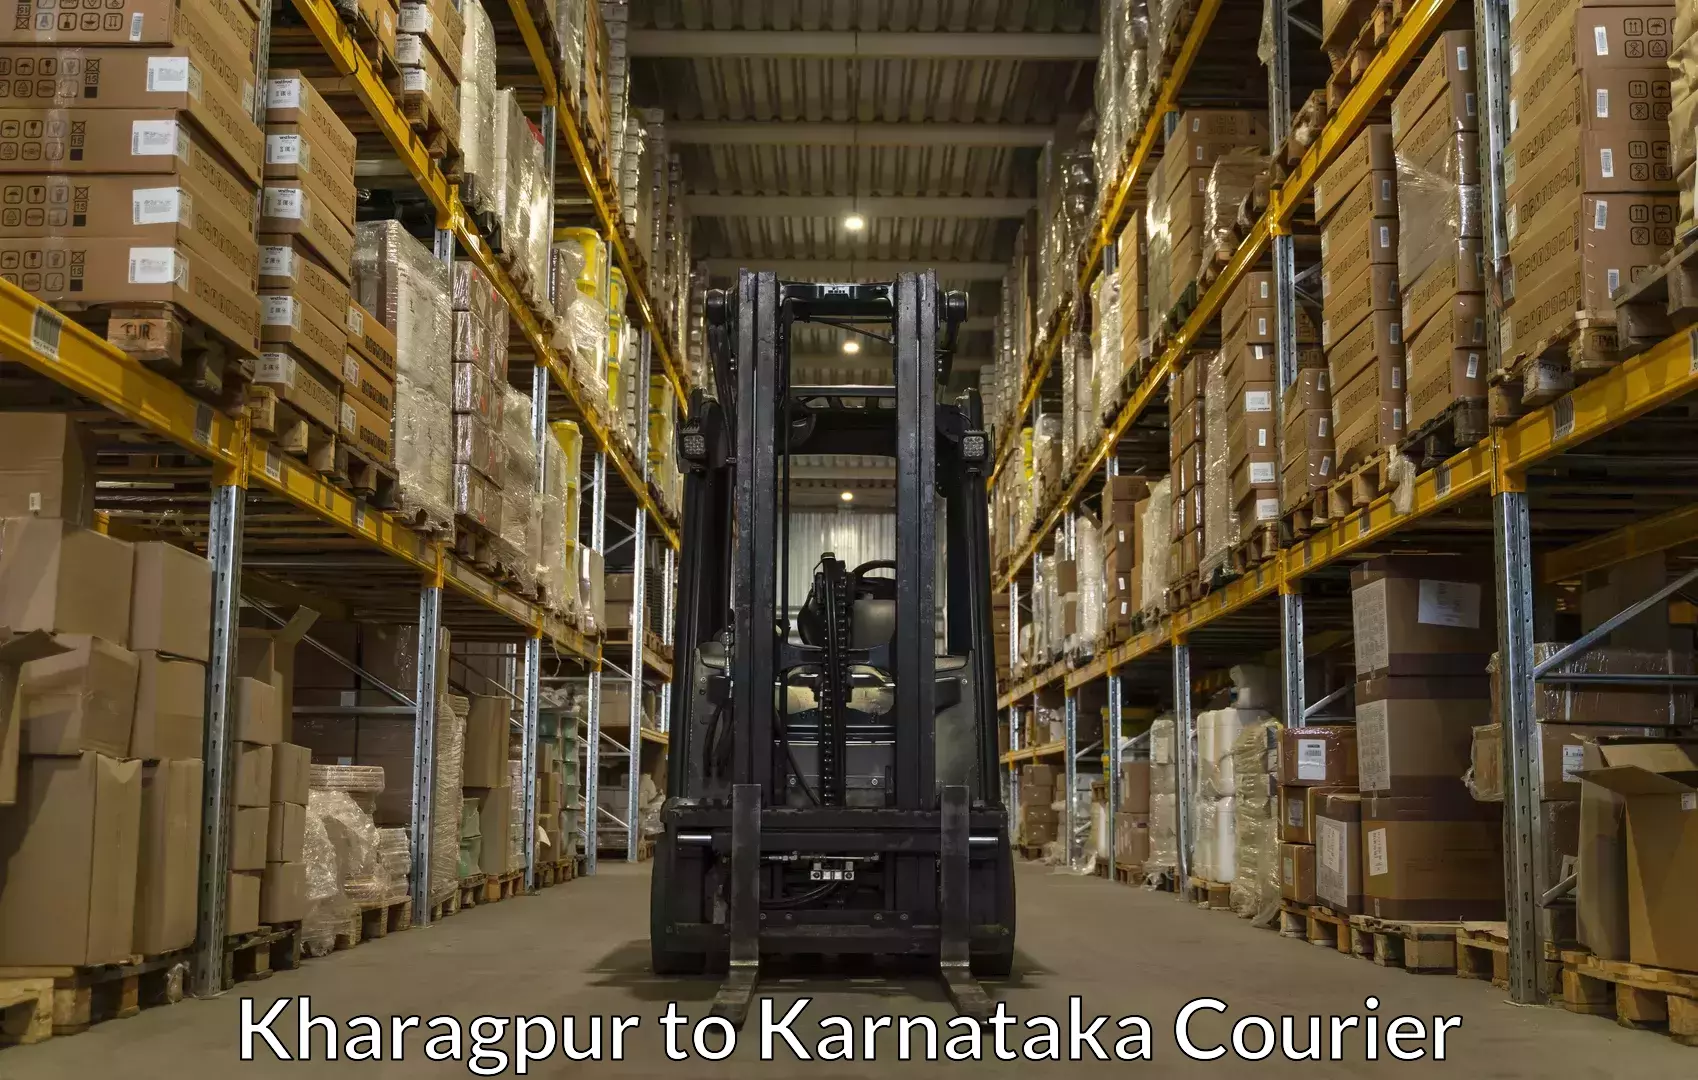 Baggage shipping service Kharagpur to Ullal